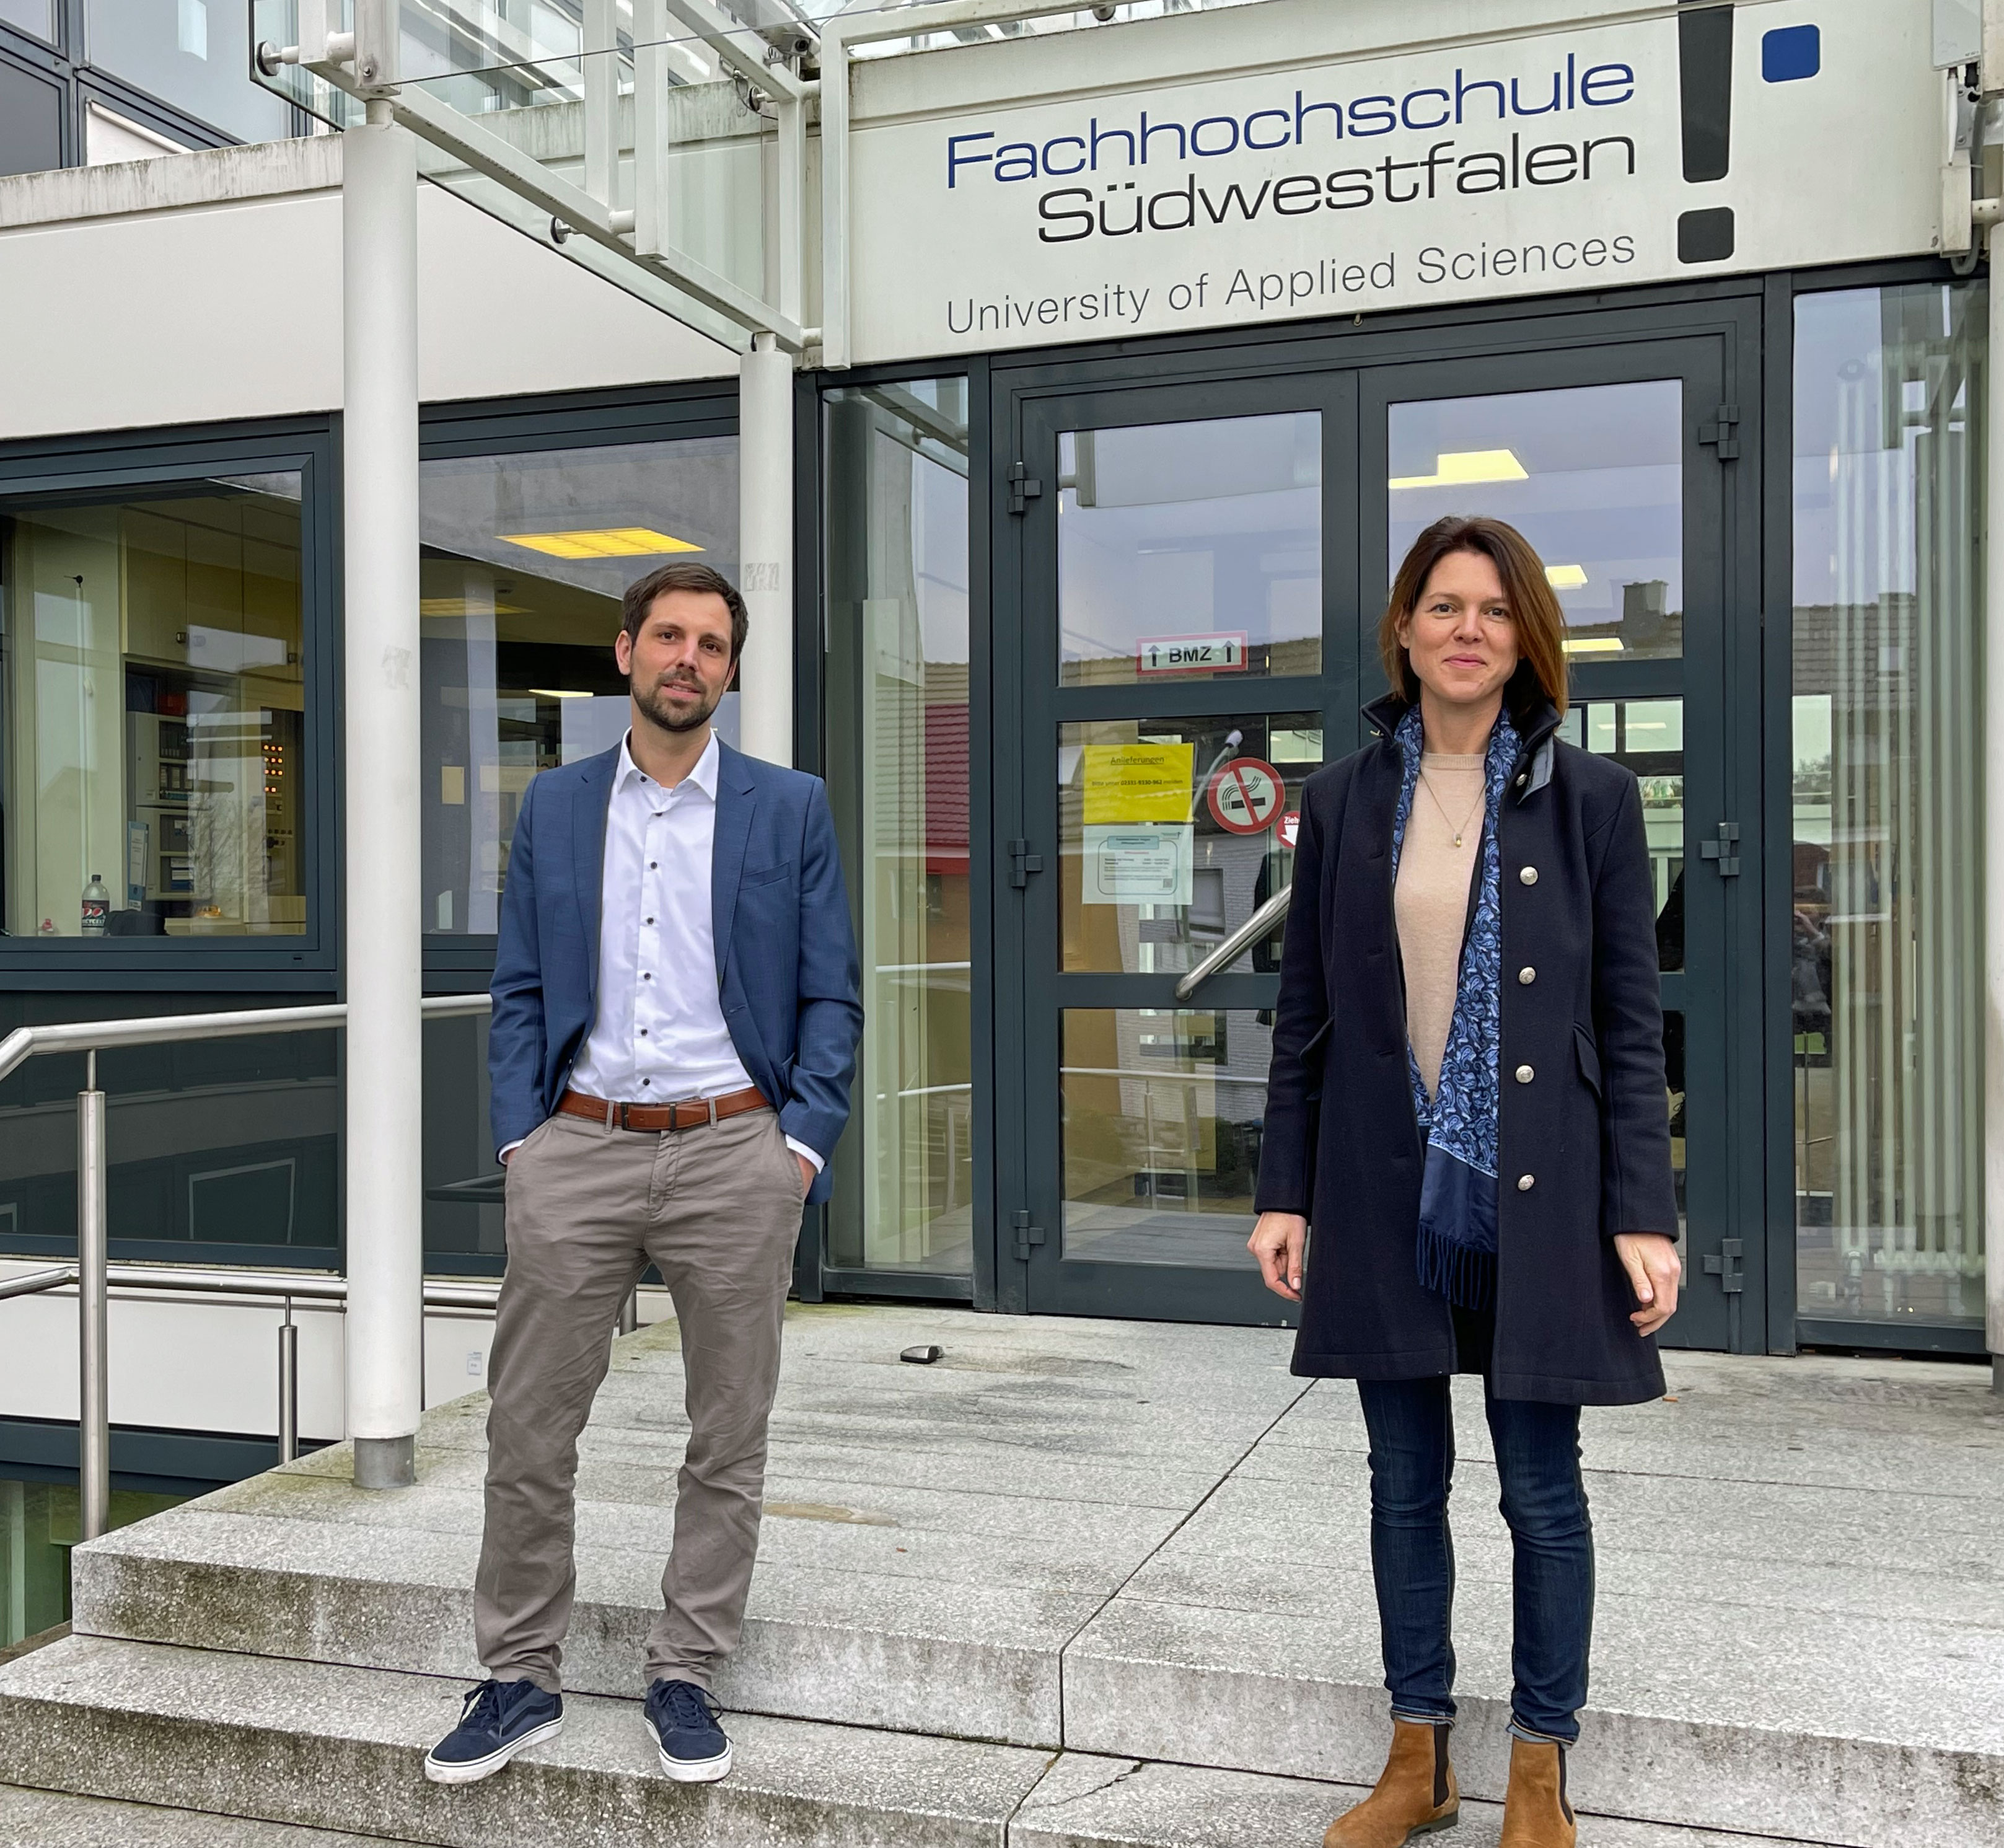 : Prof. Dr. Henning Femmer und Prof. Dr. Eva Erhardt sind neu im Fachbereich Technische Betriebswirtschaft der Fachhochschule Südwestfalen. Foto: FH SWF